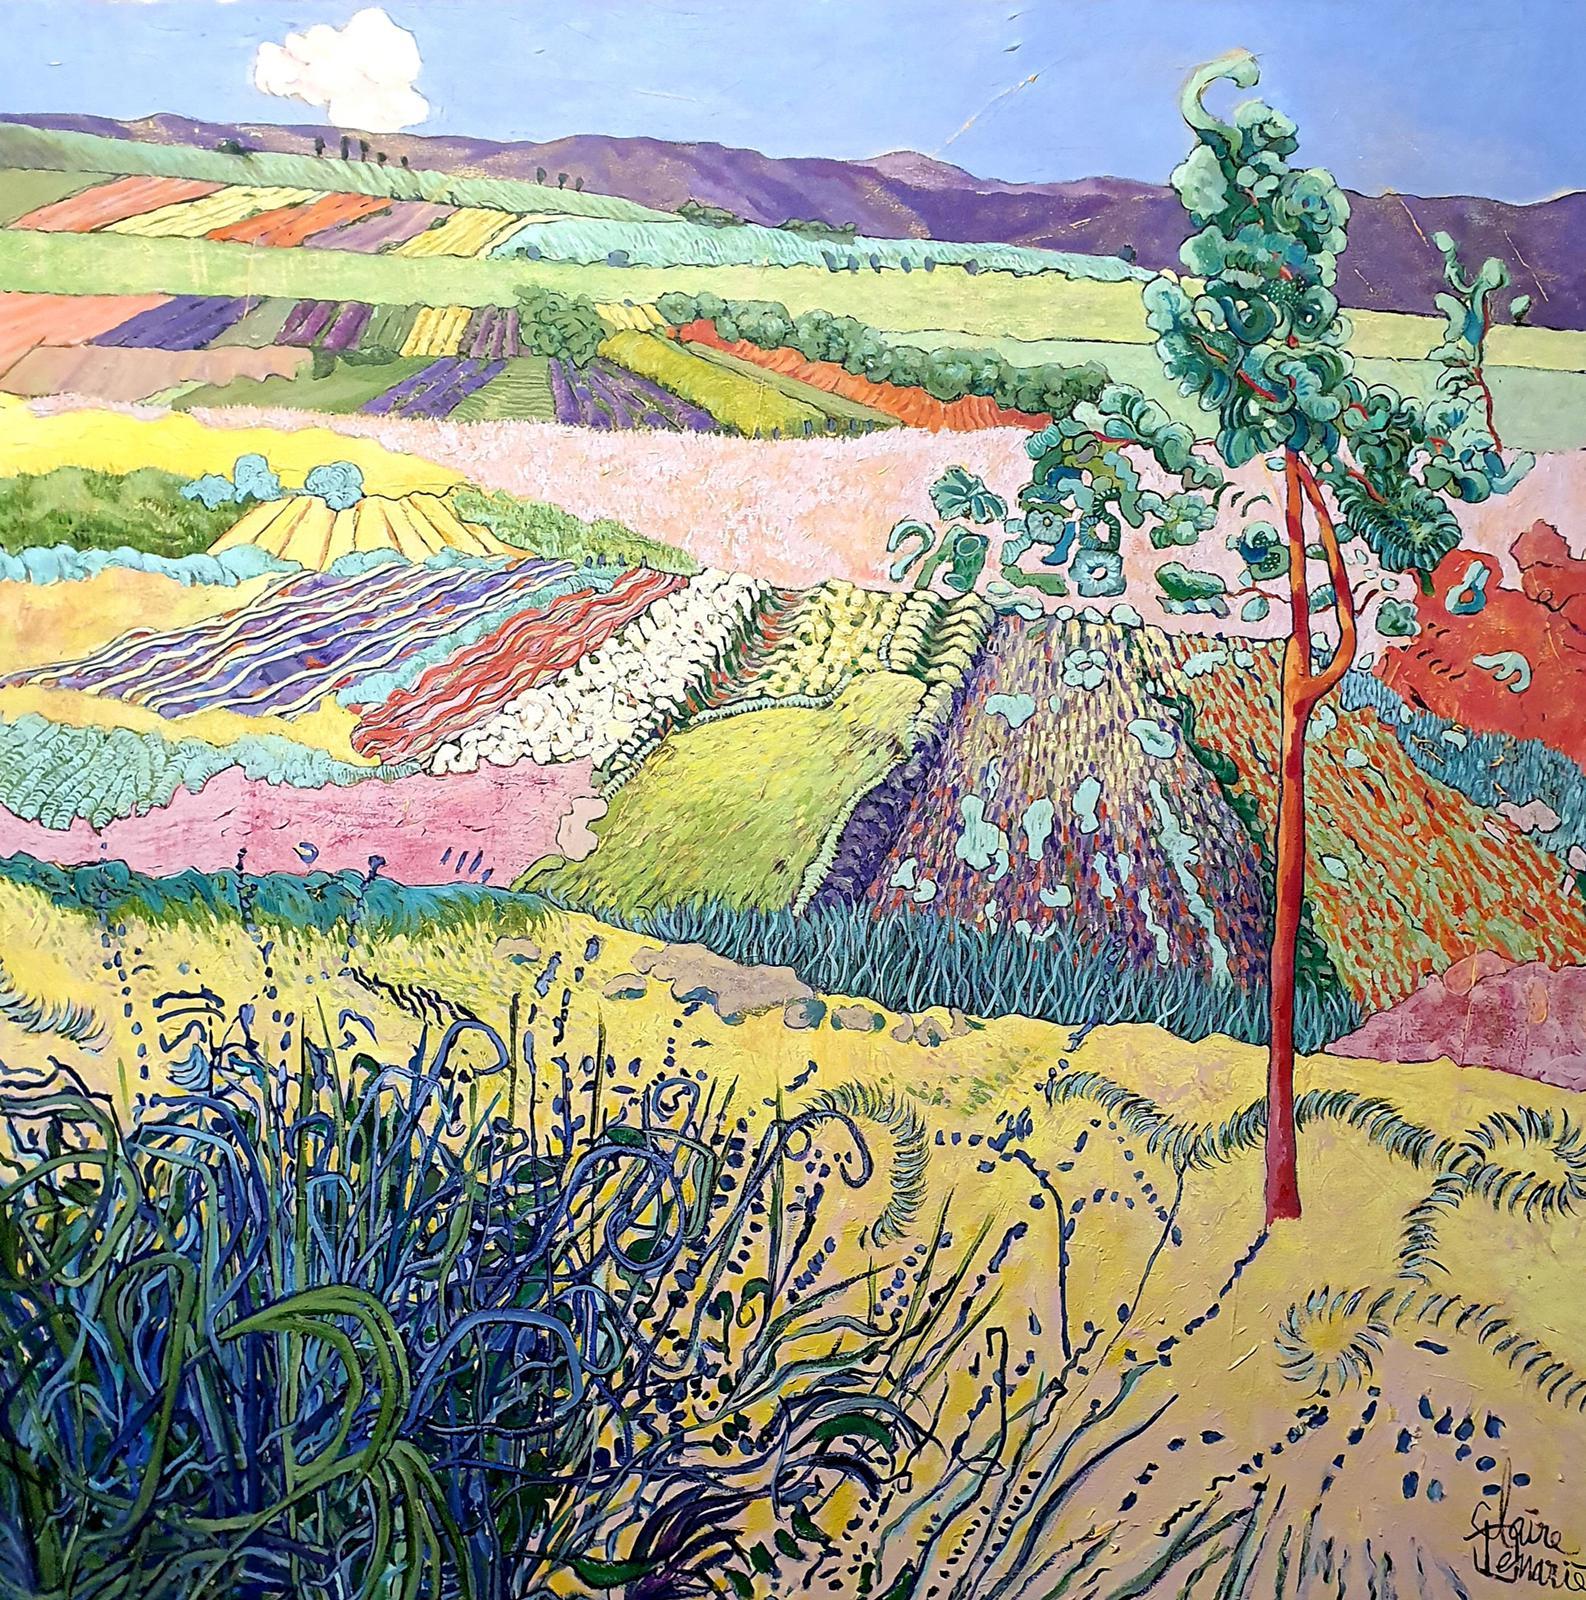 Large Colourful Exotic Landscape Painting "Le Chant"